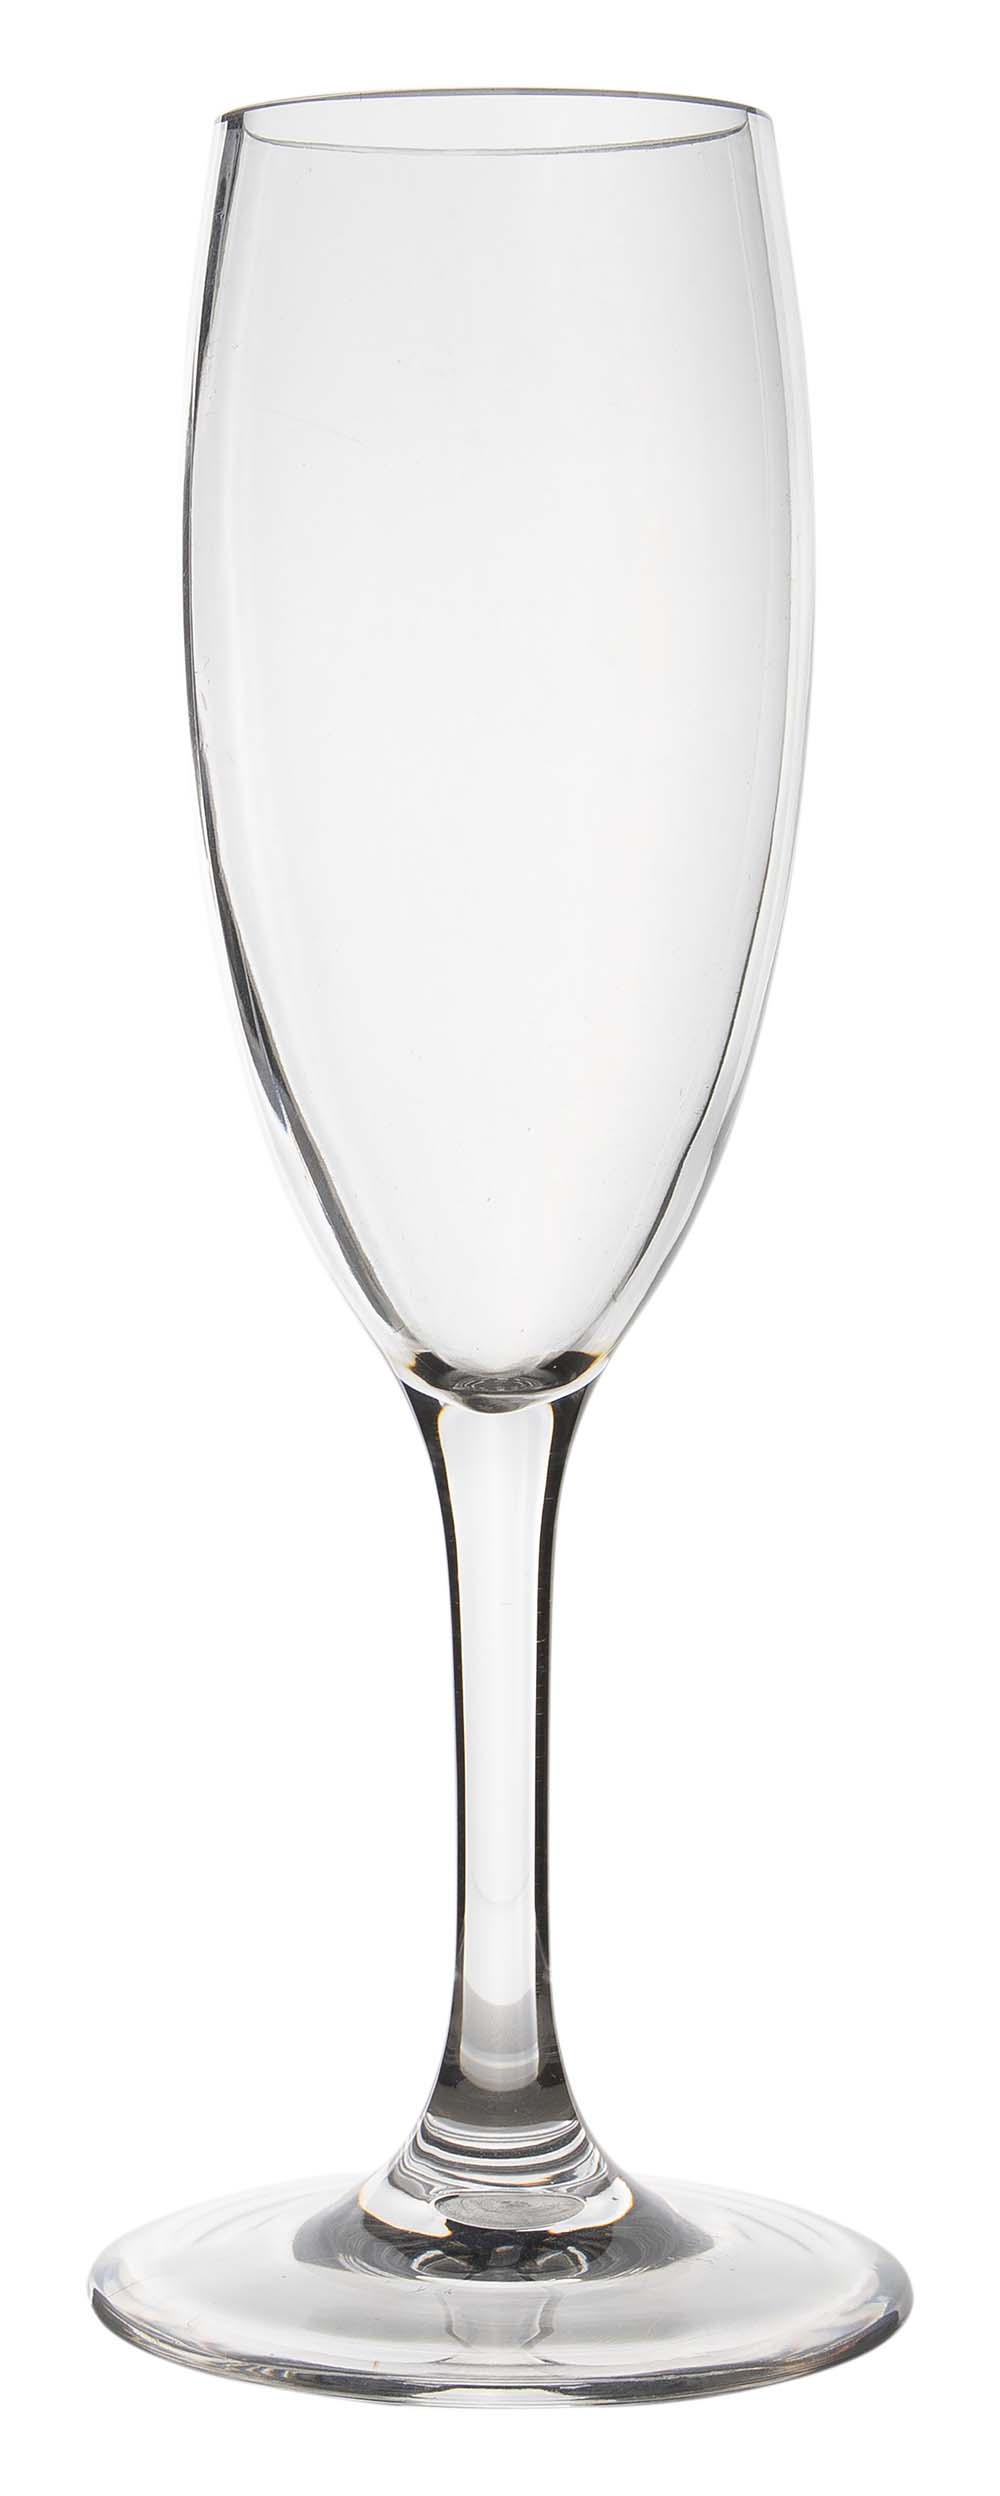 6915170 Een champagneglas uit de Linea line collectie. Vrijwel onbreekbaar door hoogwaardig MS materiaal. Bestaat uit een set van 2 stuks. Zeer gemakkelijk te reinigen en langdurig te gebruiken, wat het glas erg duurzaam maakt. Daarnaast is het champagneglas lichtgewicht en krasbestendig. Inhoud: 180 ml.